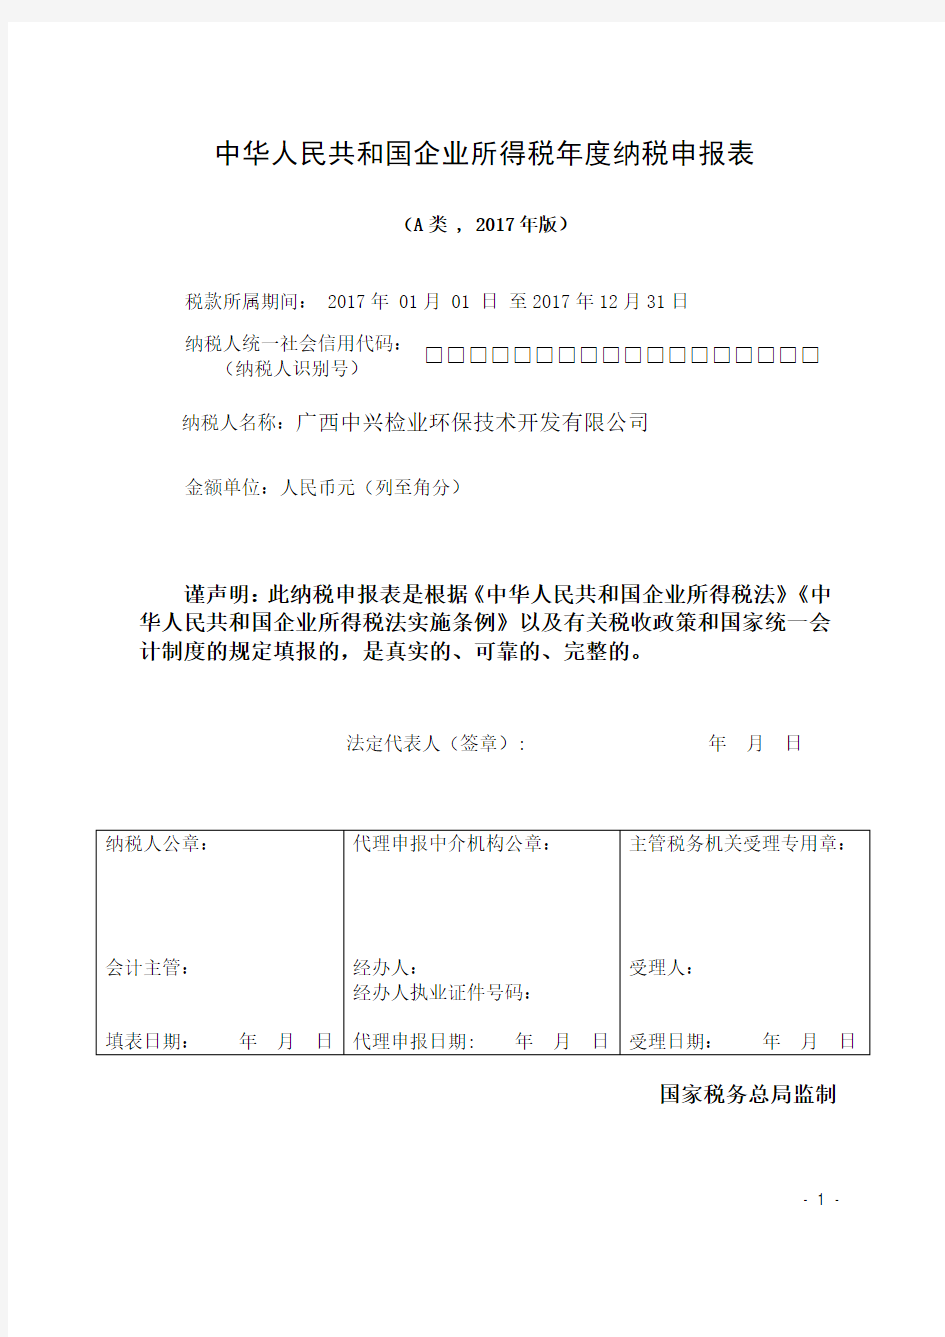 1中华人民共和国企业所得税年度纳税申报表(零申报)